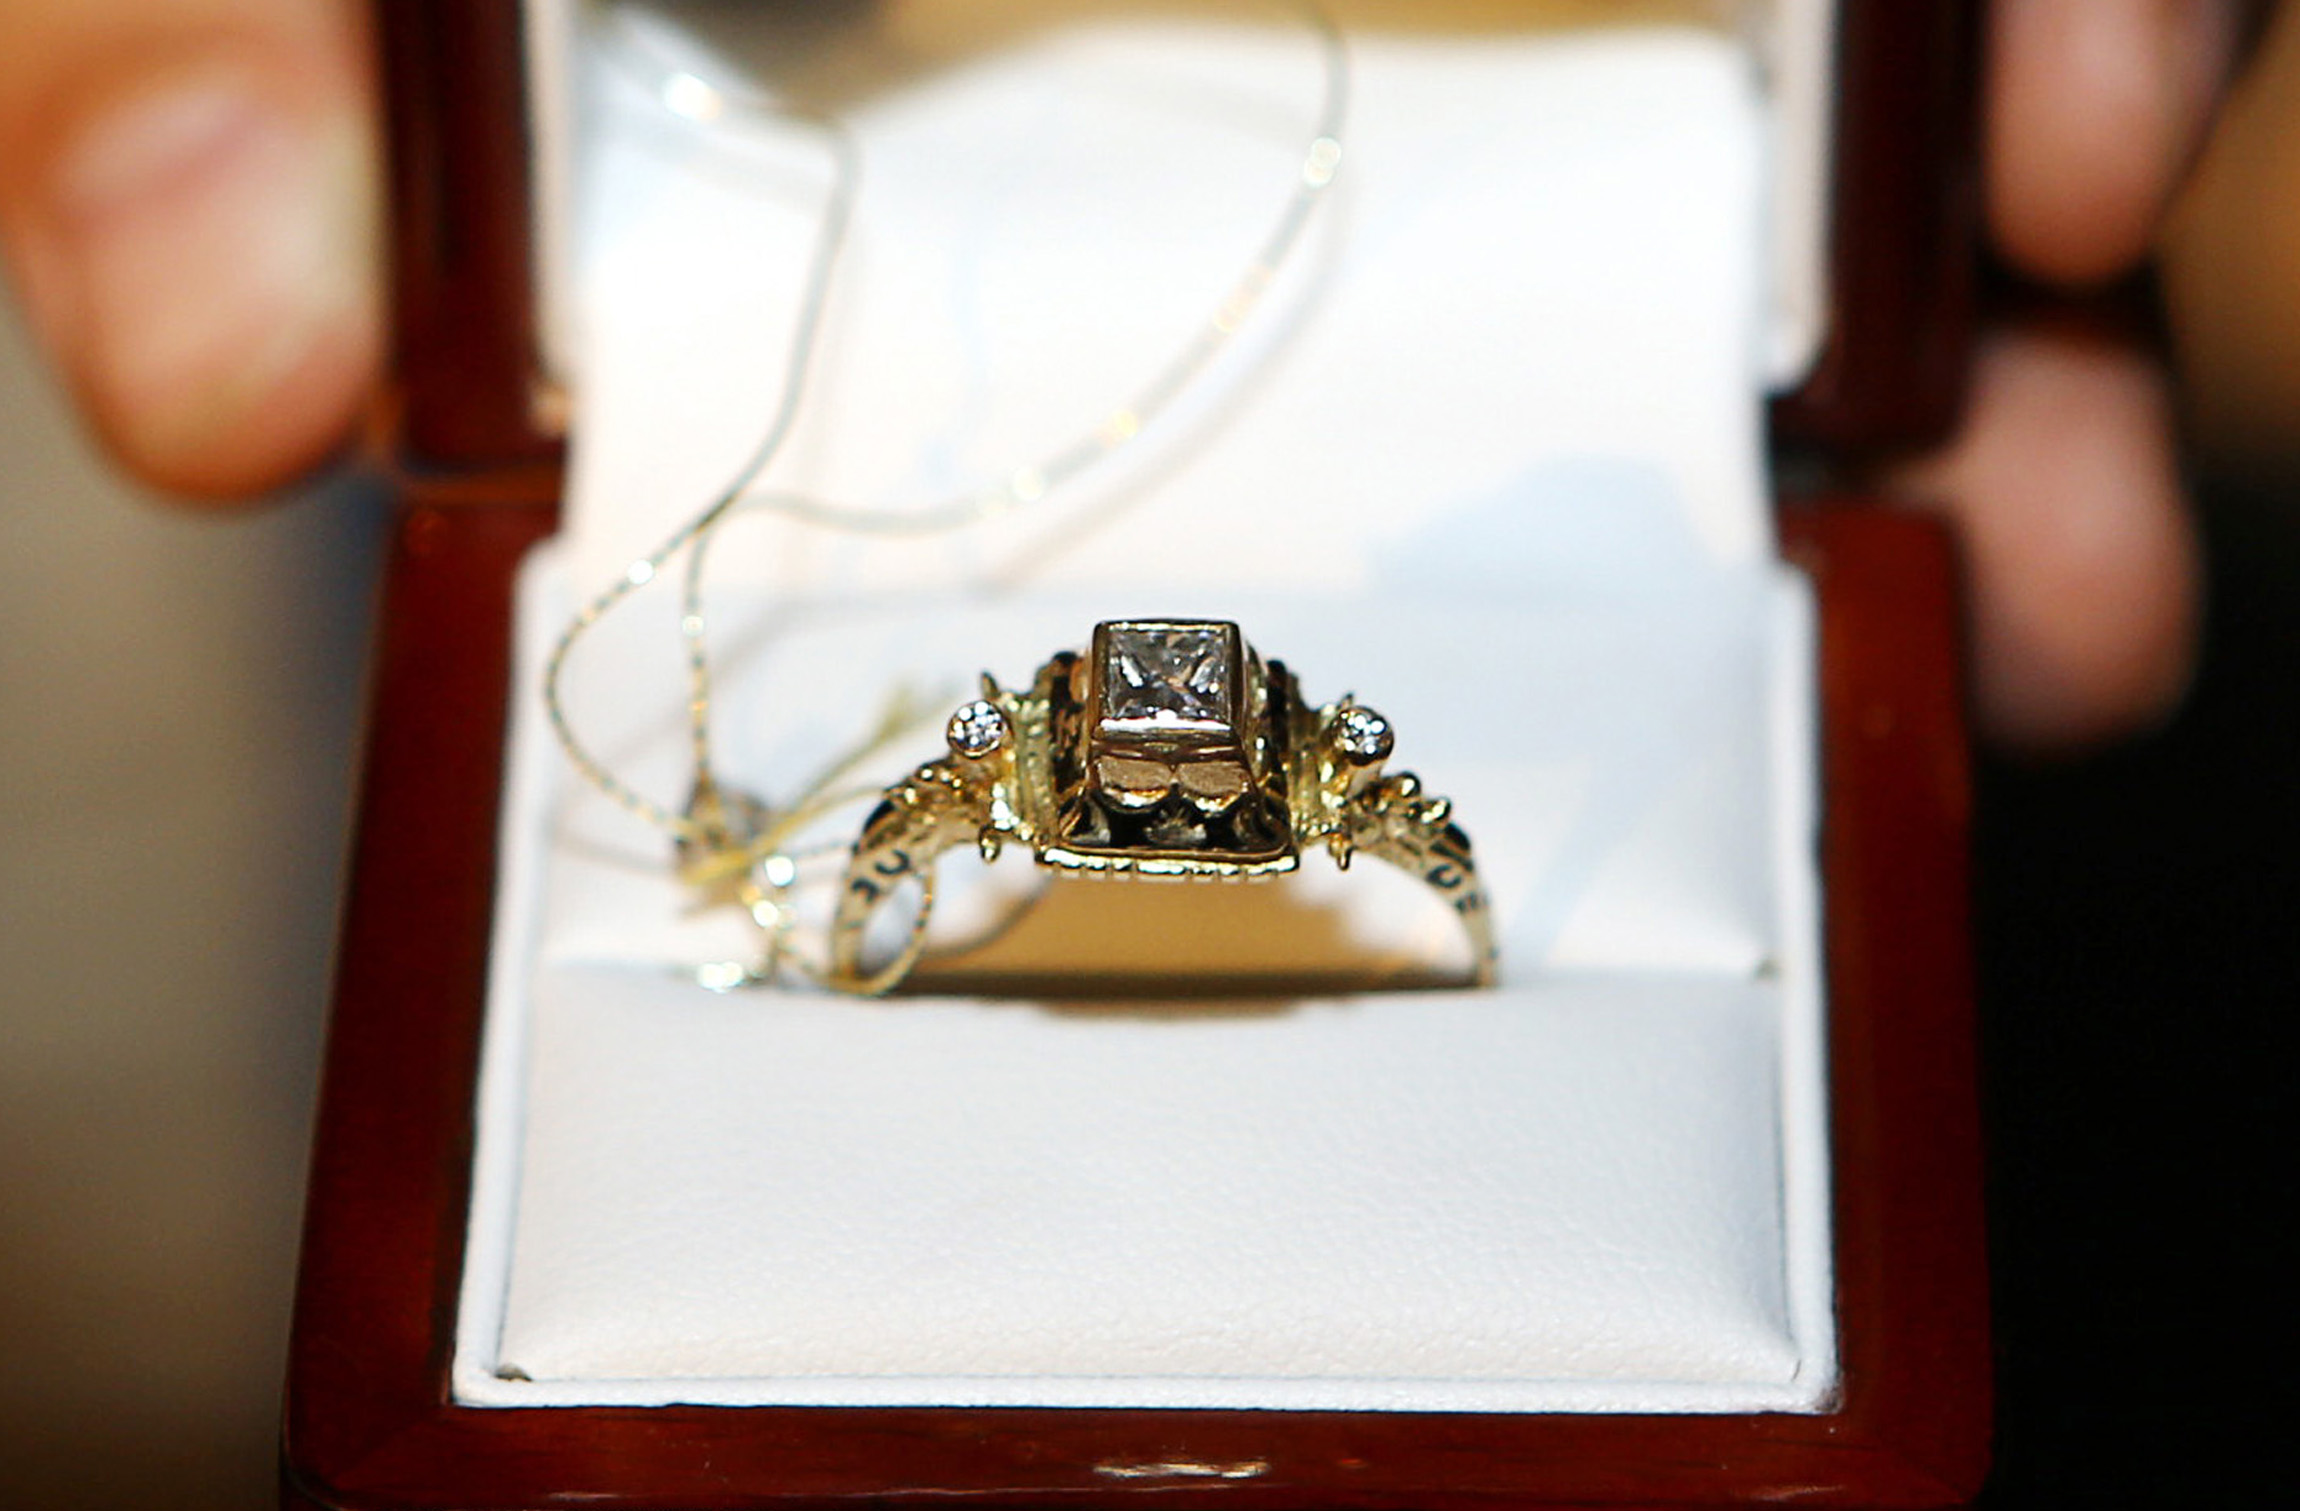 Auksinis žiedas, pagamintas pagal renesansinio žiedo, saugomo Mažosios Lietuvos istorijos muziejuje, pavyzdį. | V. Liaudanskio nuotr.